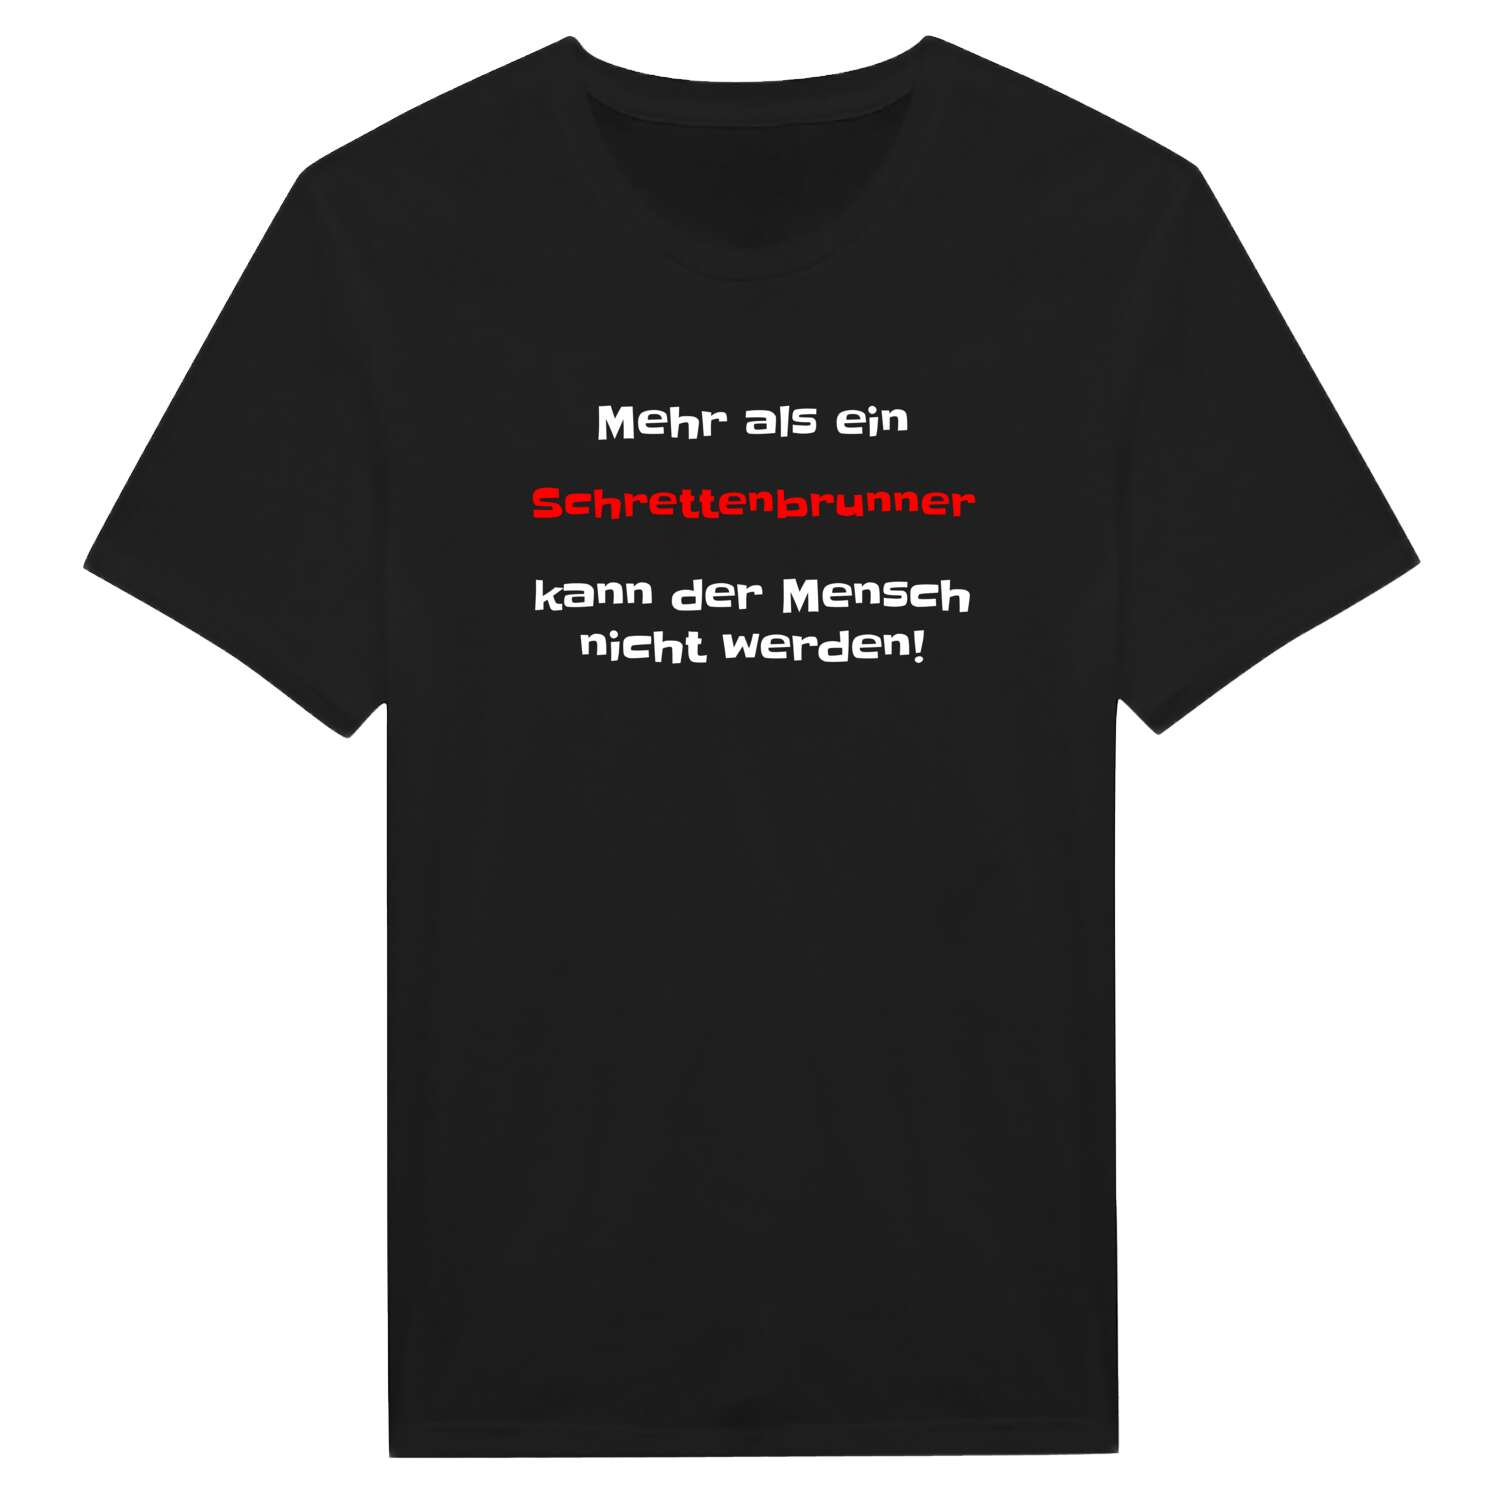 Schrettenbrunn T-Shirt »Mehr als ein«